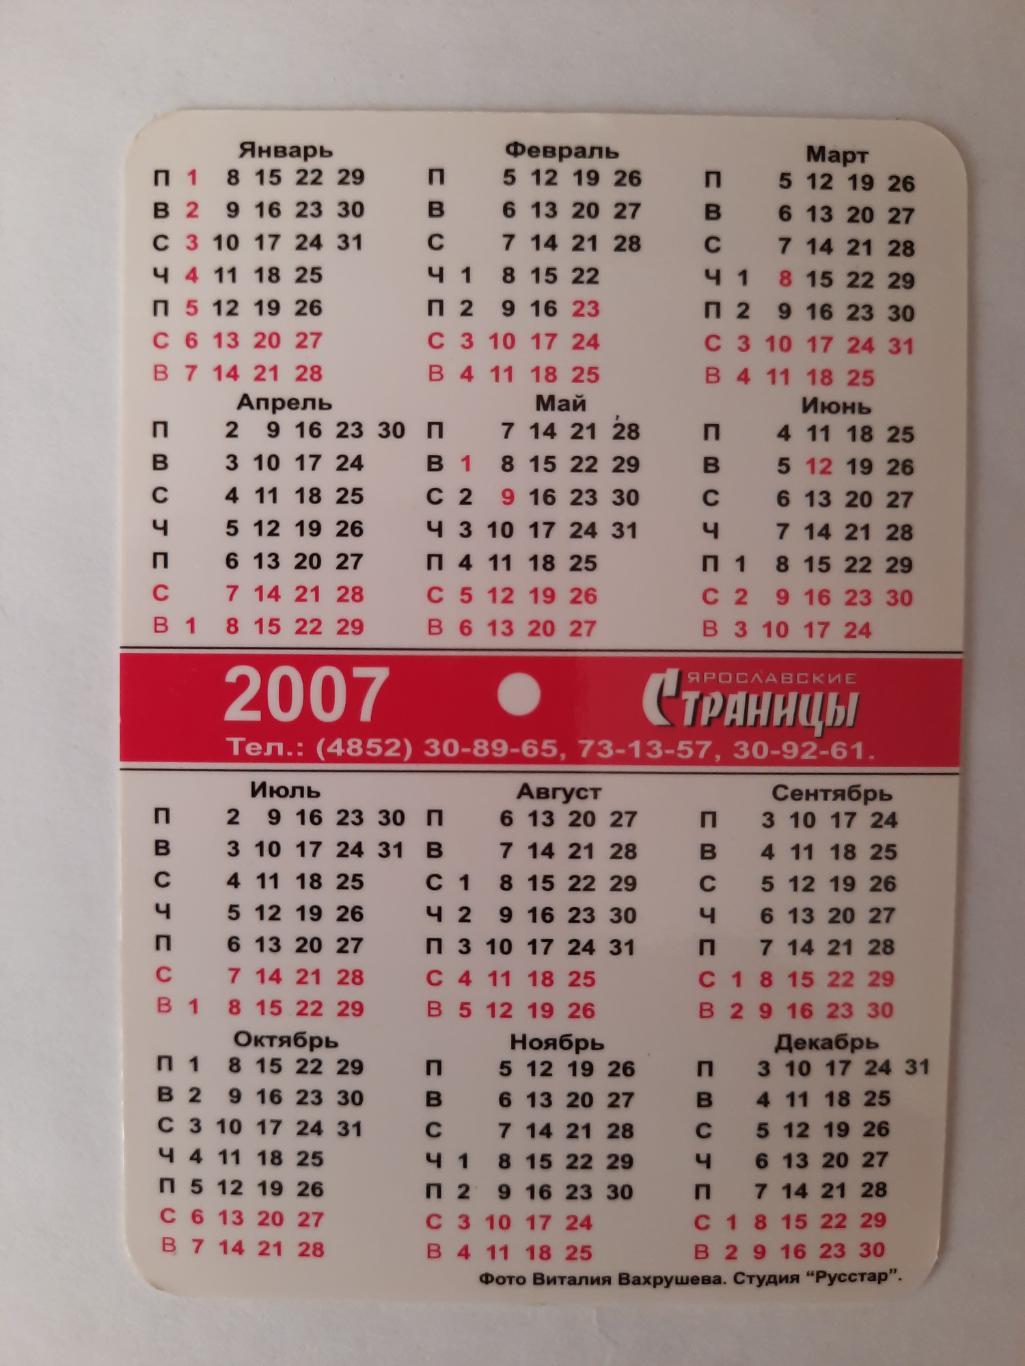 Календарик карманный. Ярославские страницы 2007г. 1